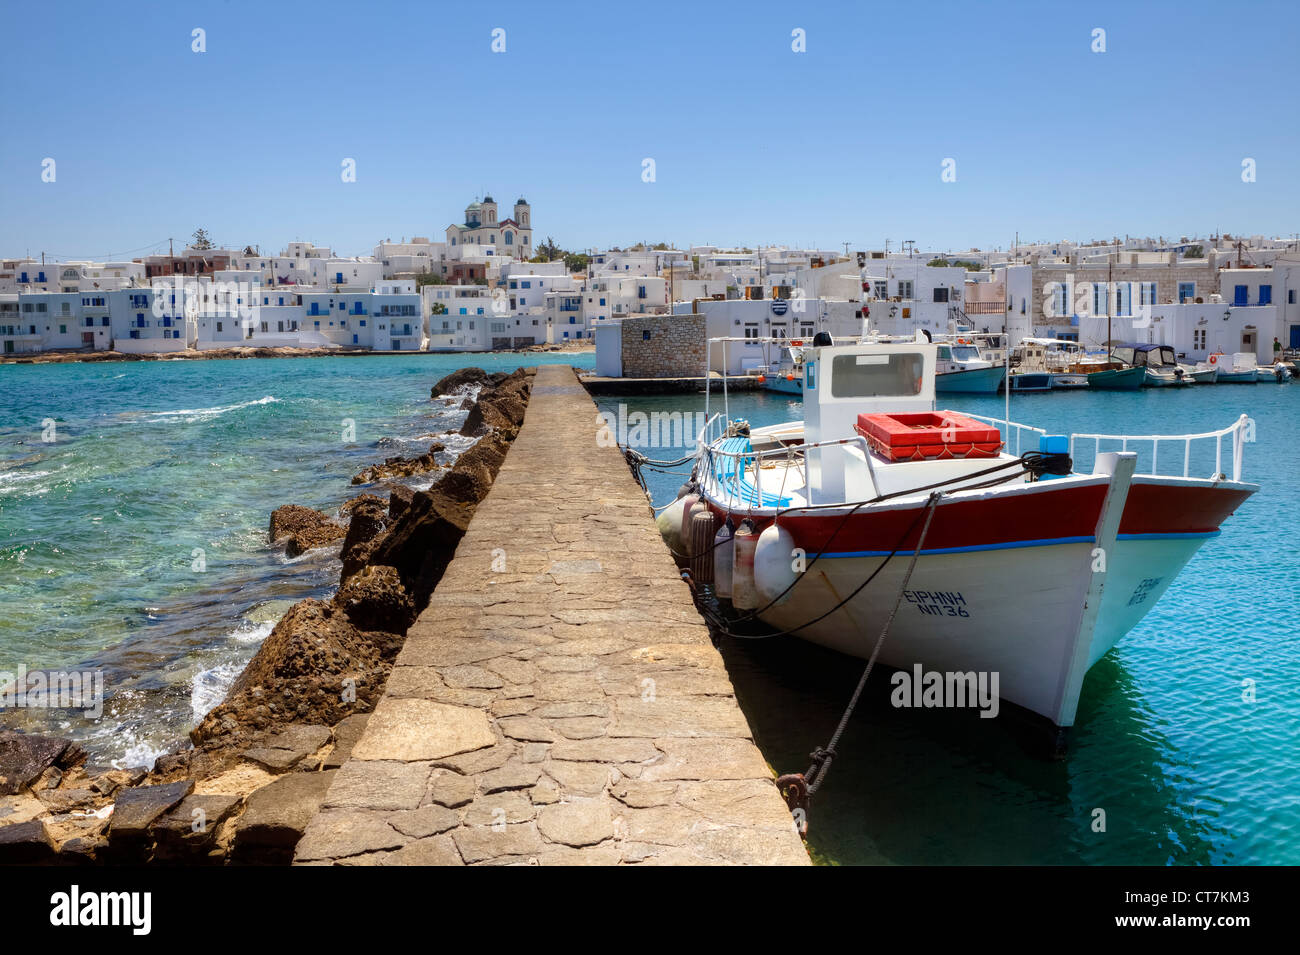 Mit Blick auf die alte Stadt von Naoussa, Paros, Griechenland Stockfoto